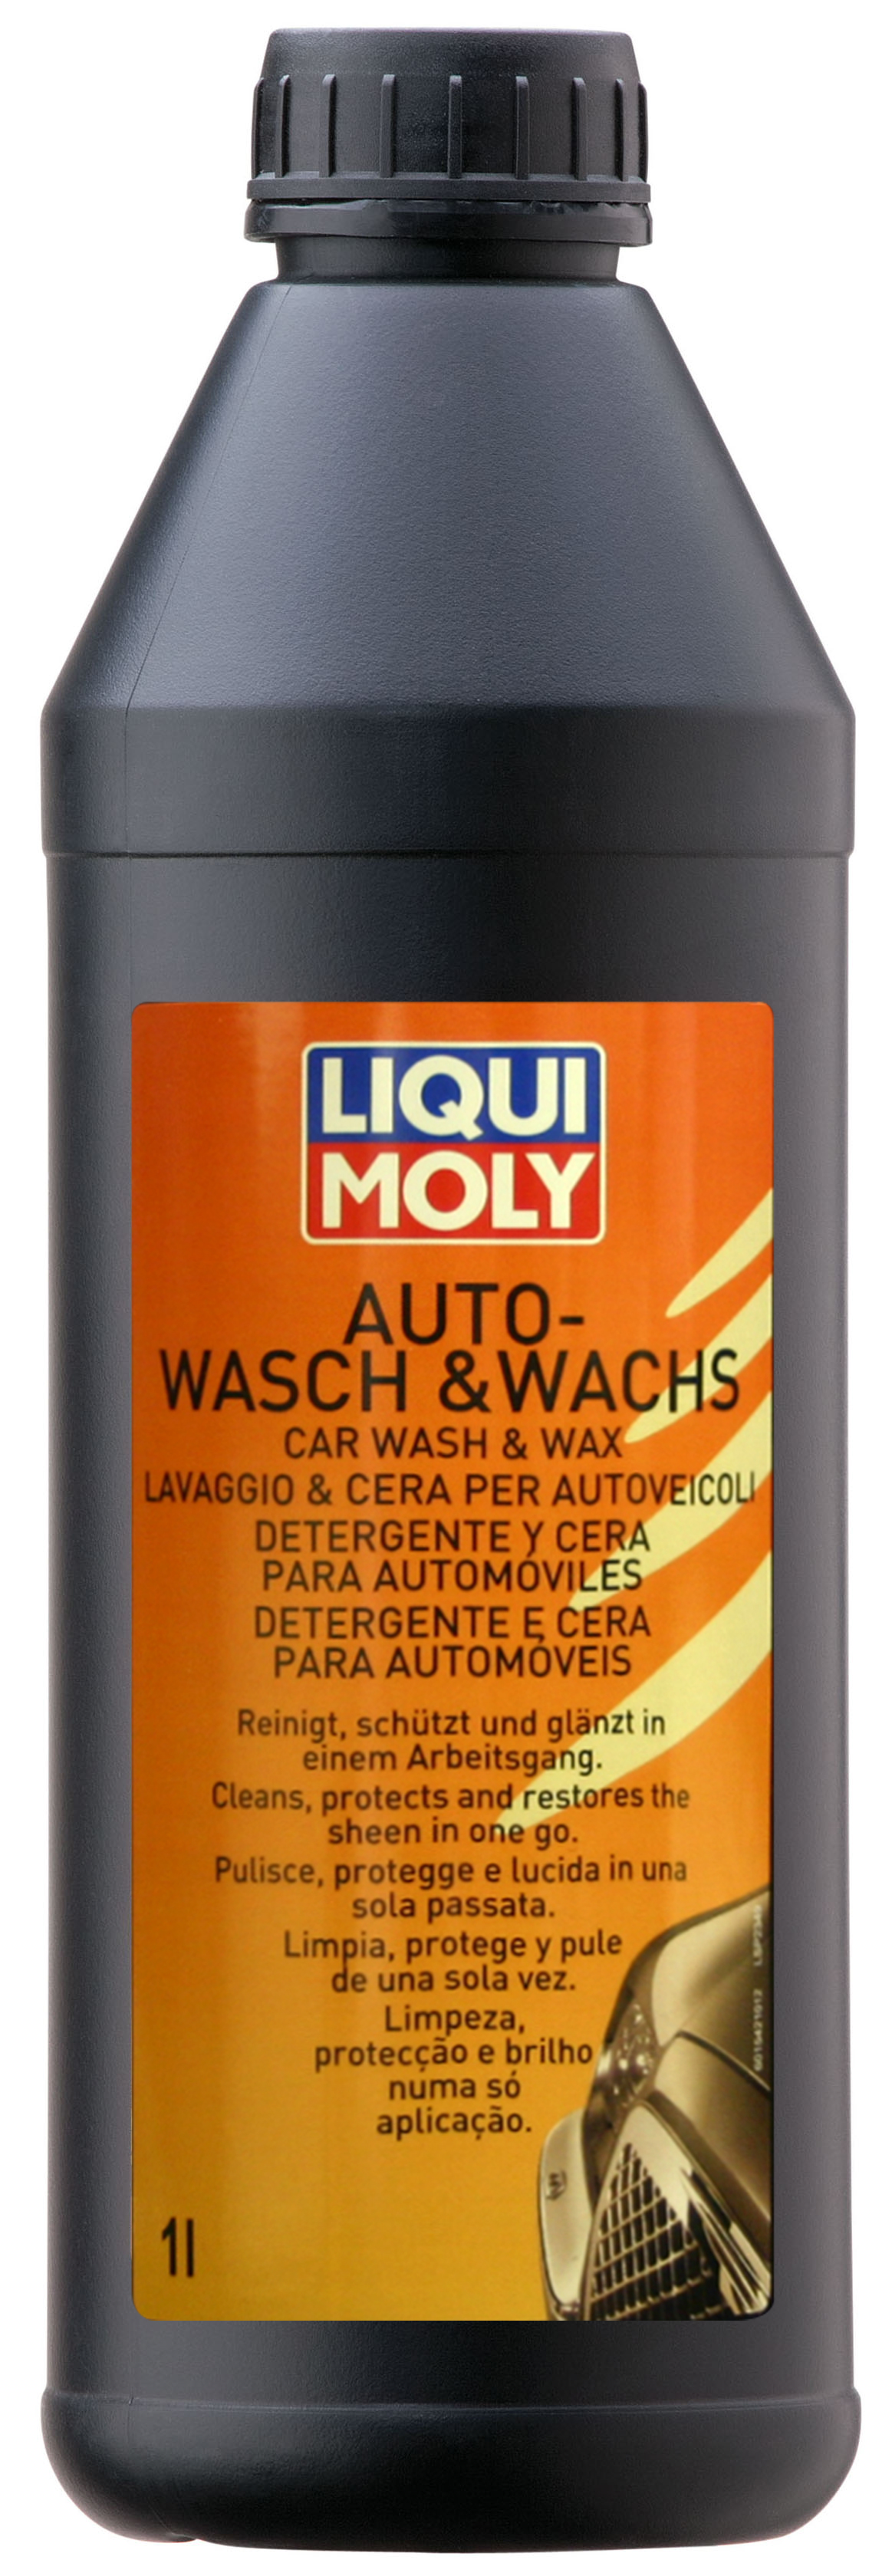 Автомобильный шампунь с воском LIQUI MOLY Auto-Wasch & Wachs (1 литр)